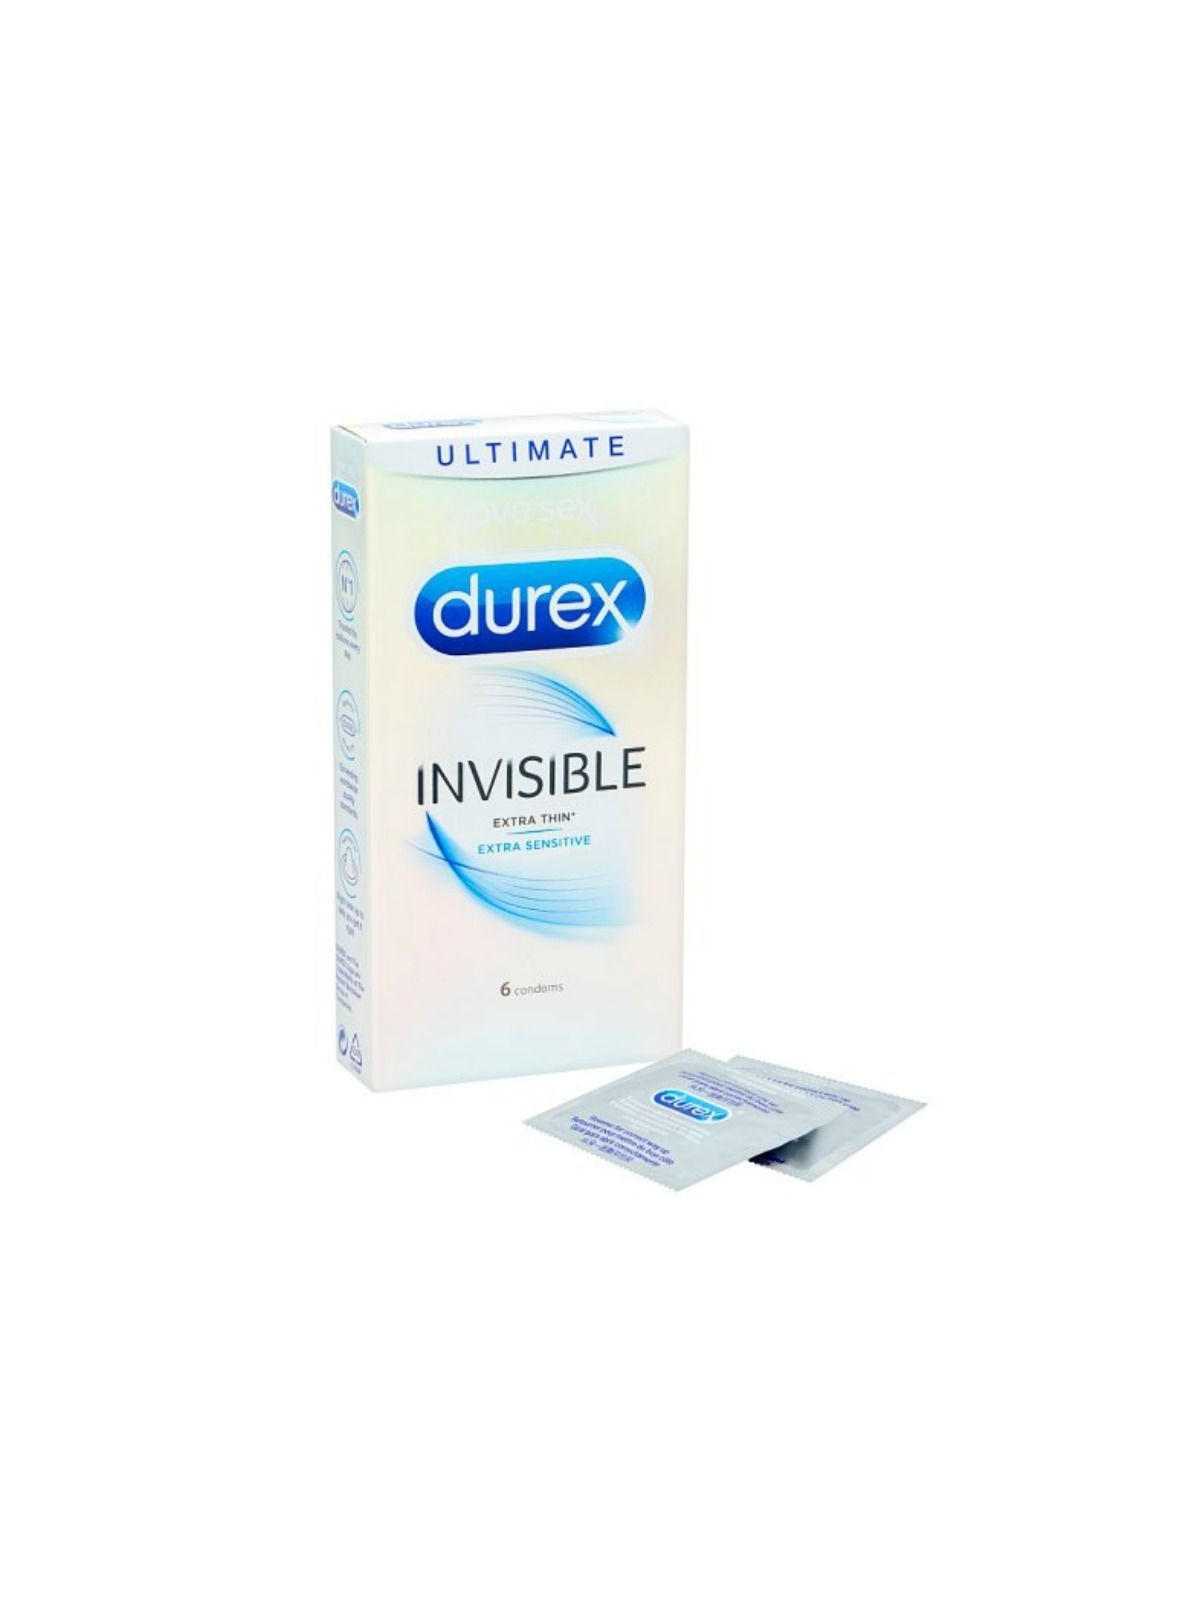 Durex Invisible Extra Fino - Comprar Condones extra finos Durex - Preservativos extra finos (2)